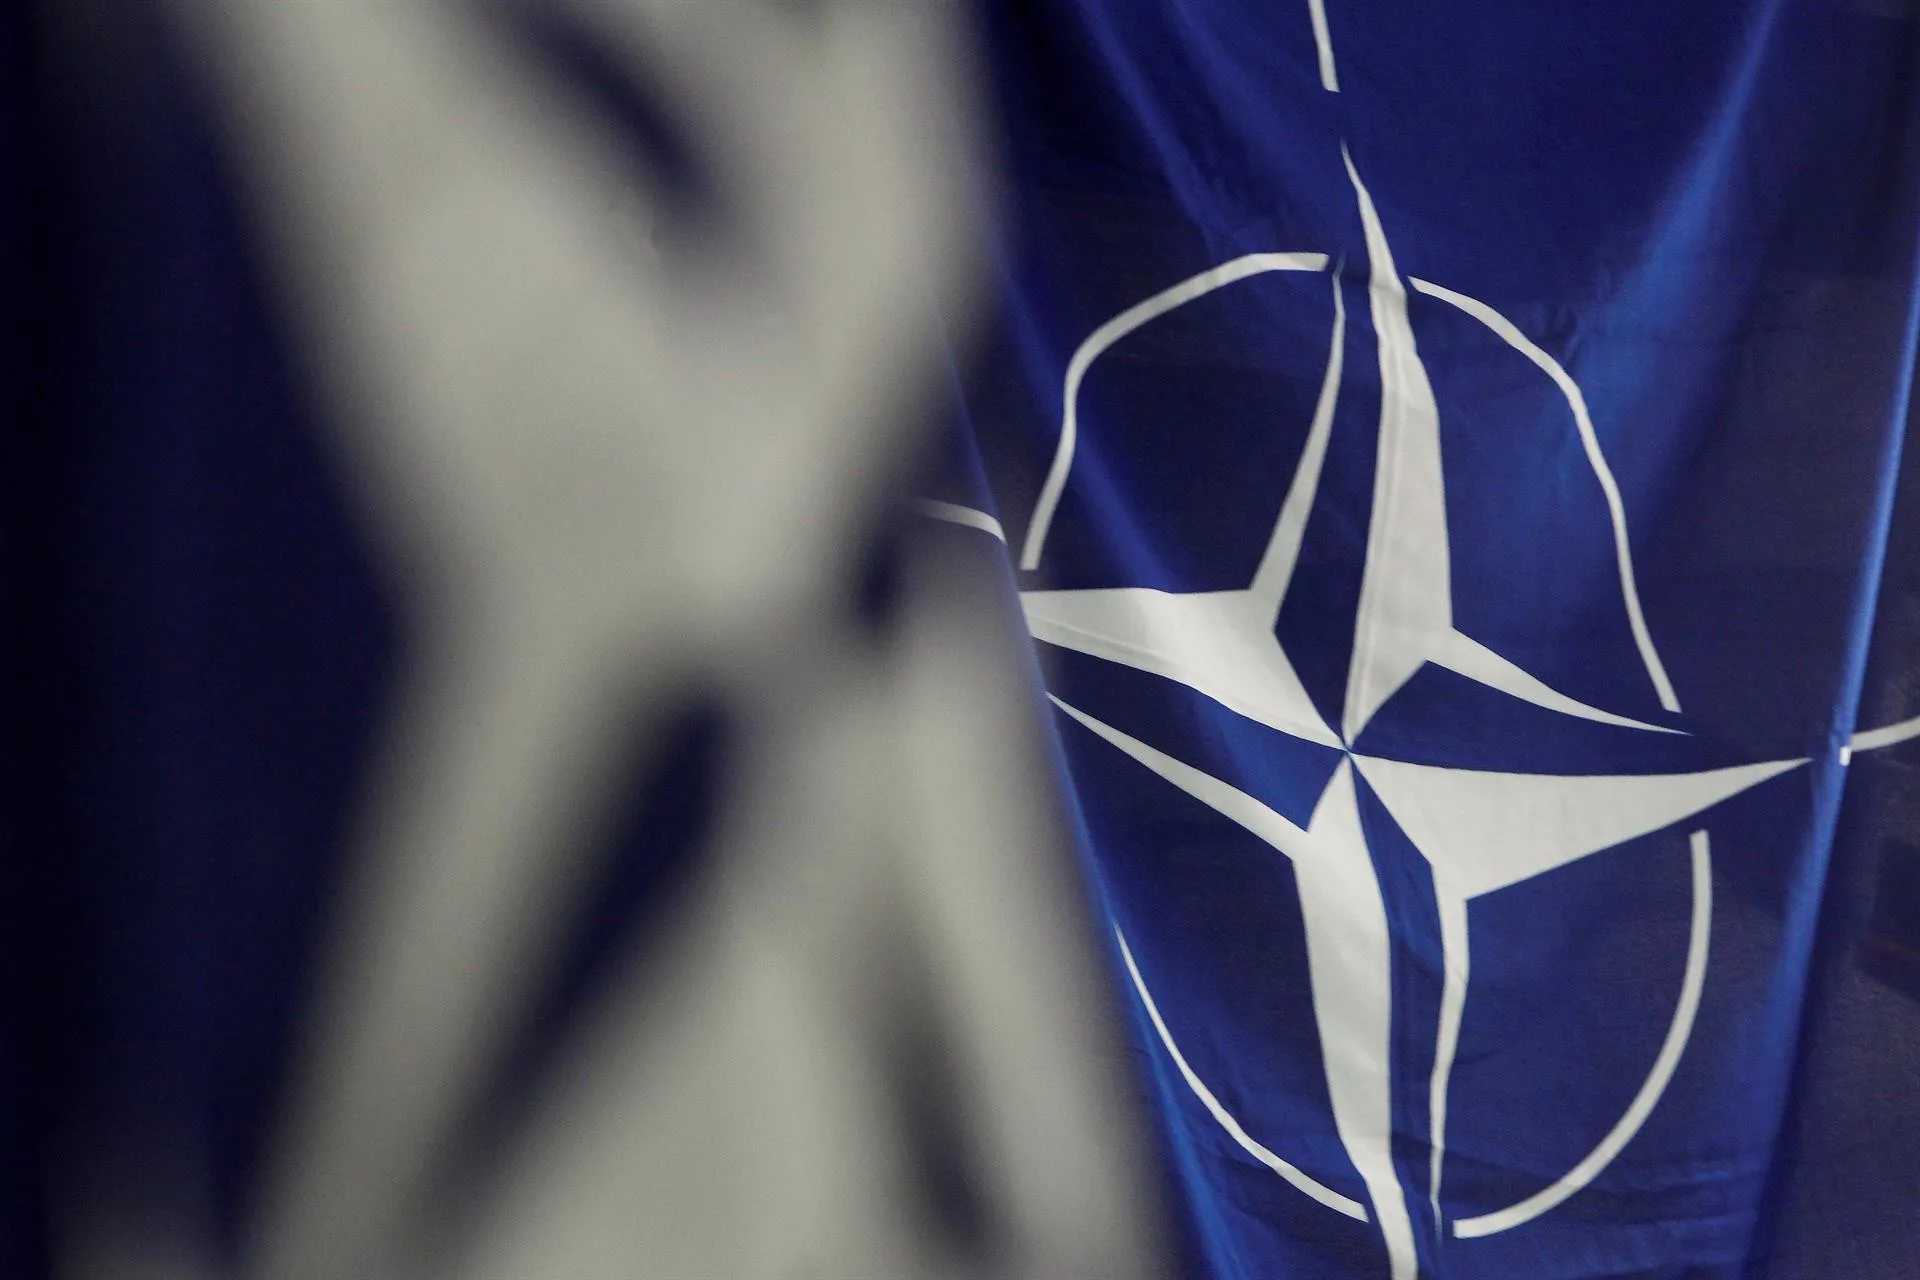 Ingreso de Suecia y Finlandia en OTAN tendrá transmisión en directo